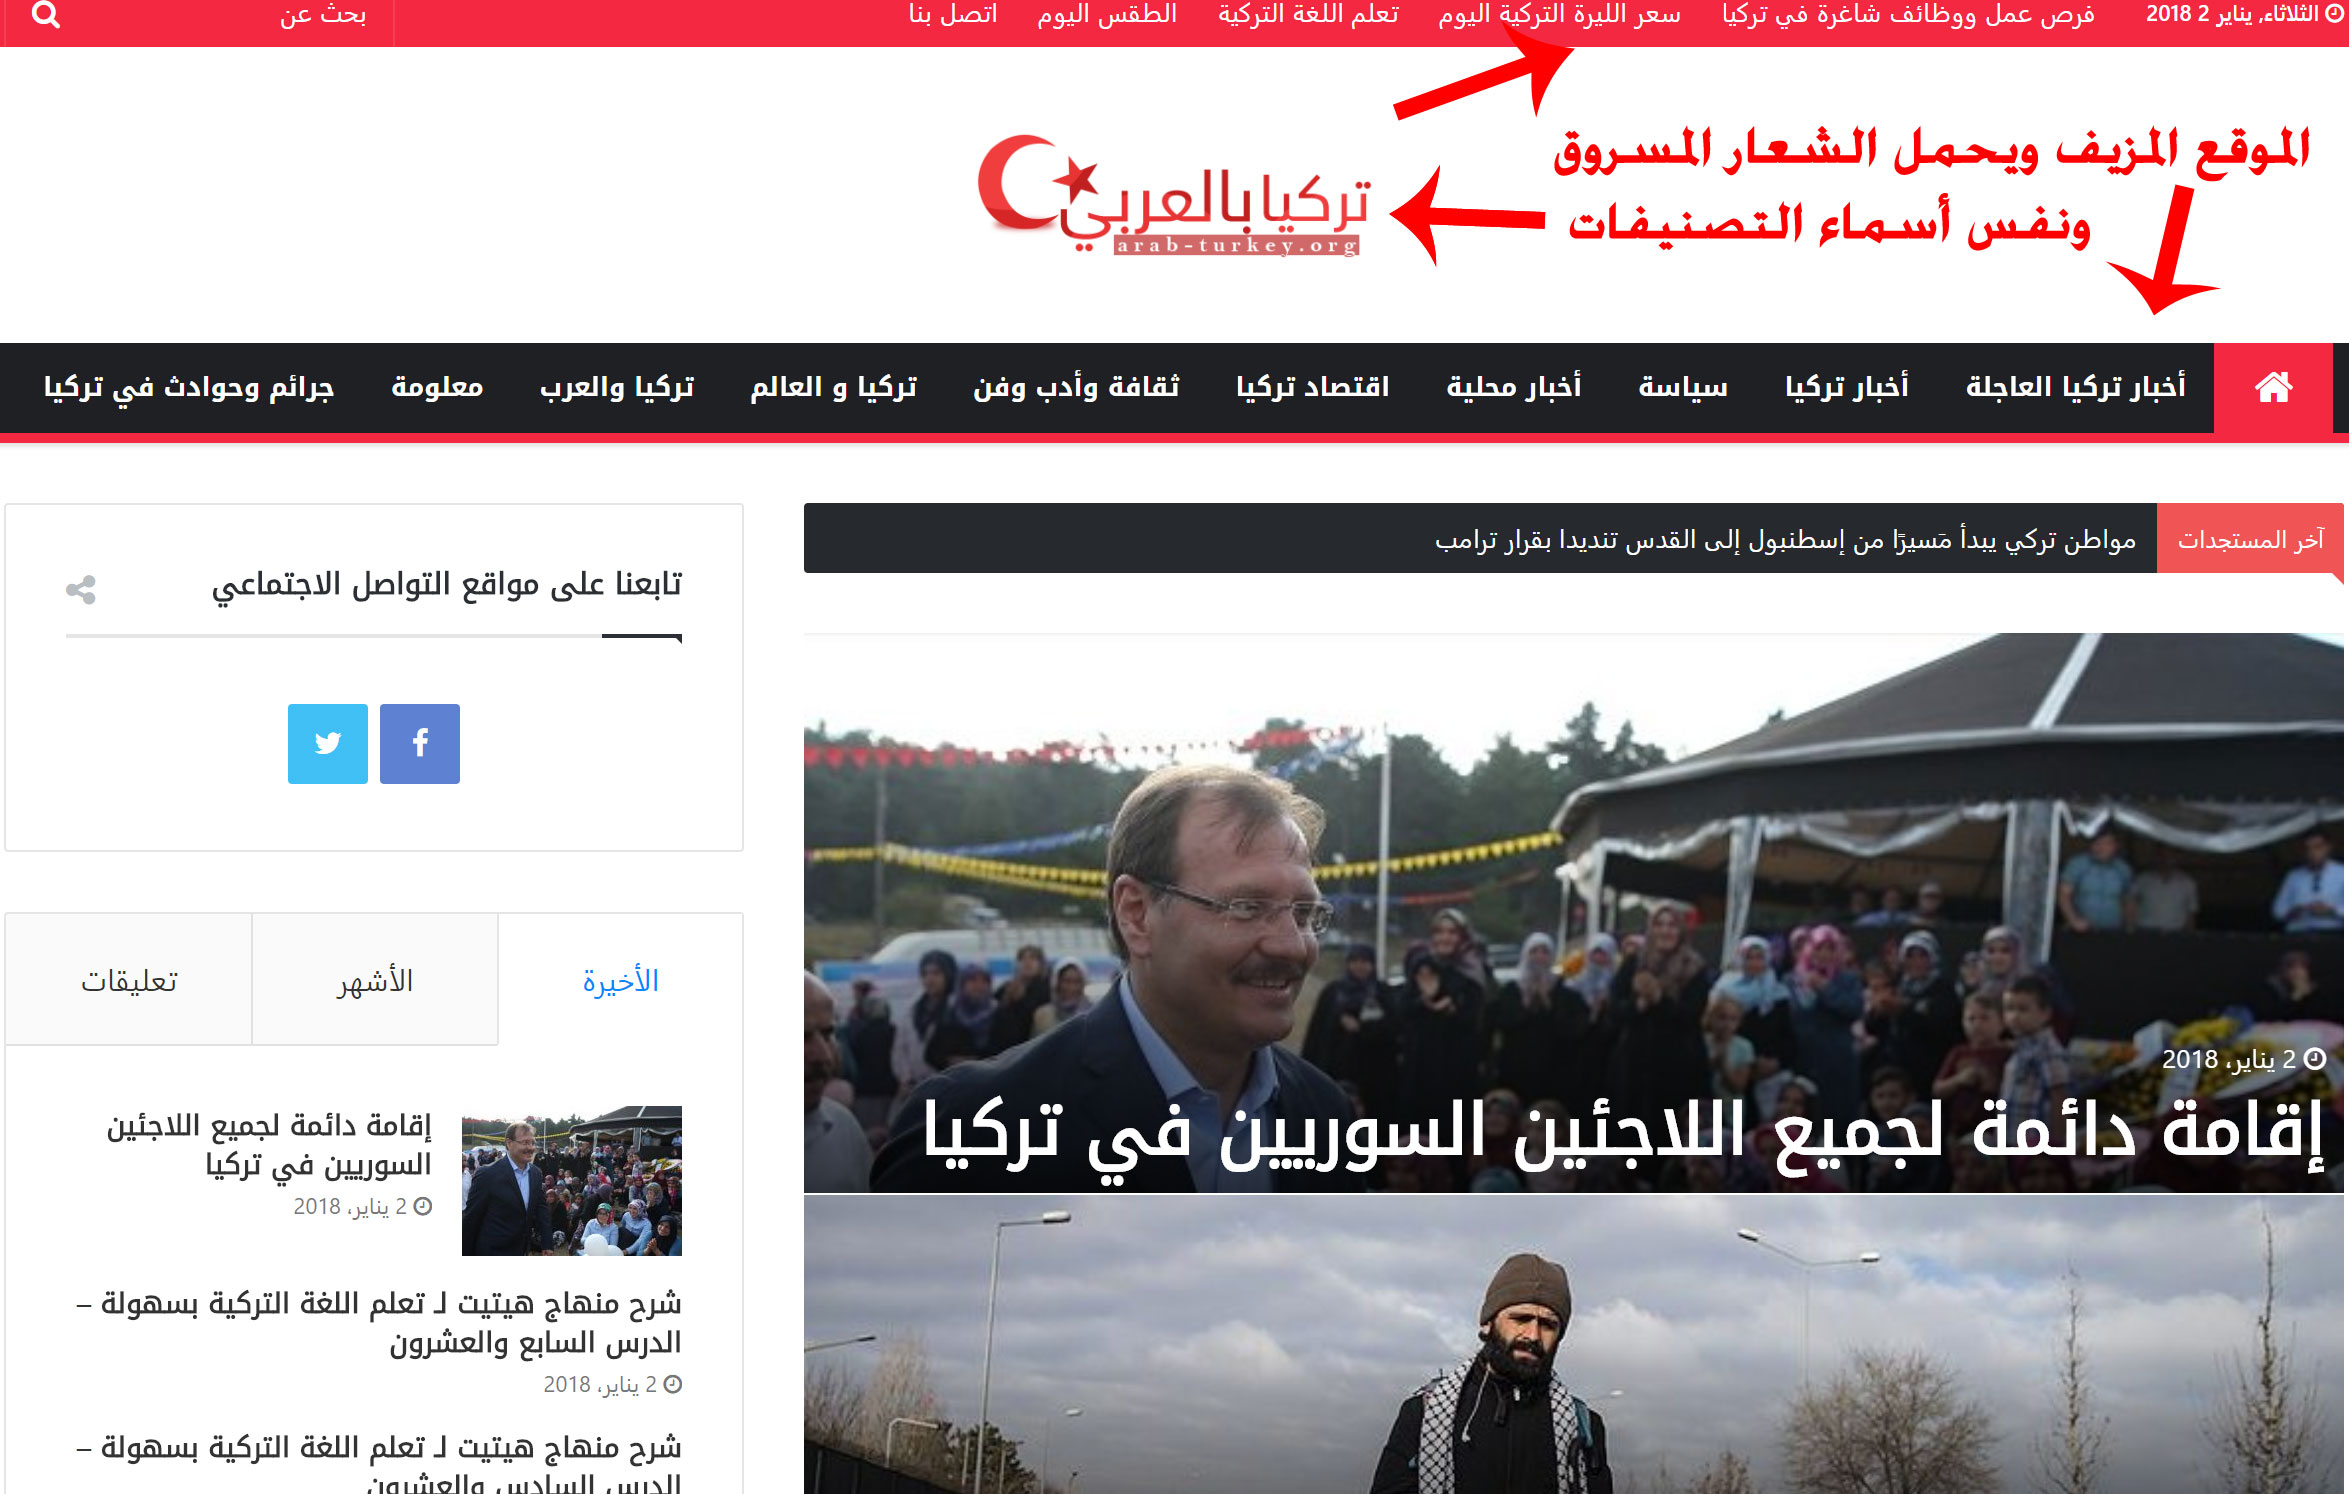 لصوص الإعلام ينسخون موقع تركيا بالعربي ويسرقون تصاميمه ومرآة سوريا تروّج لهم